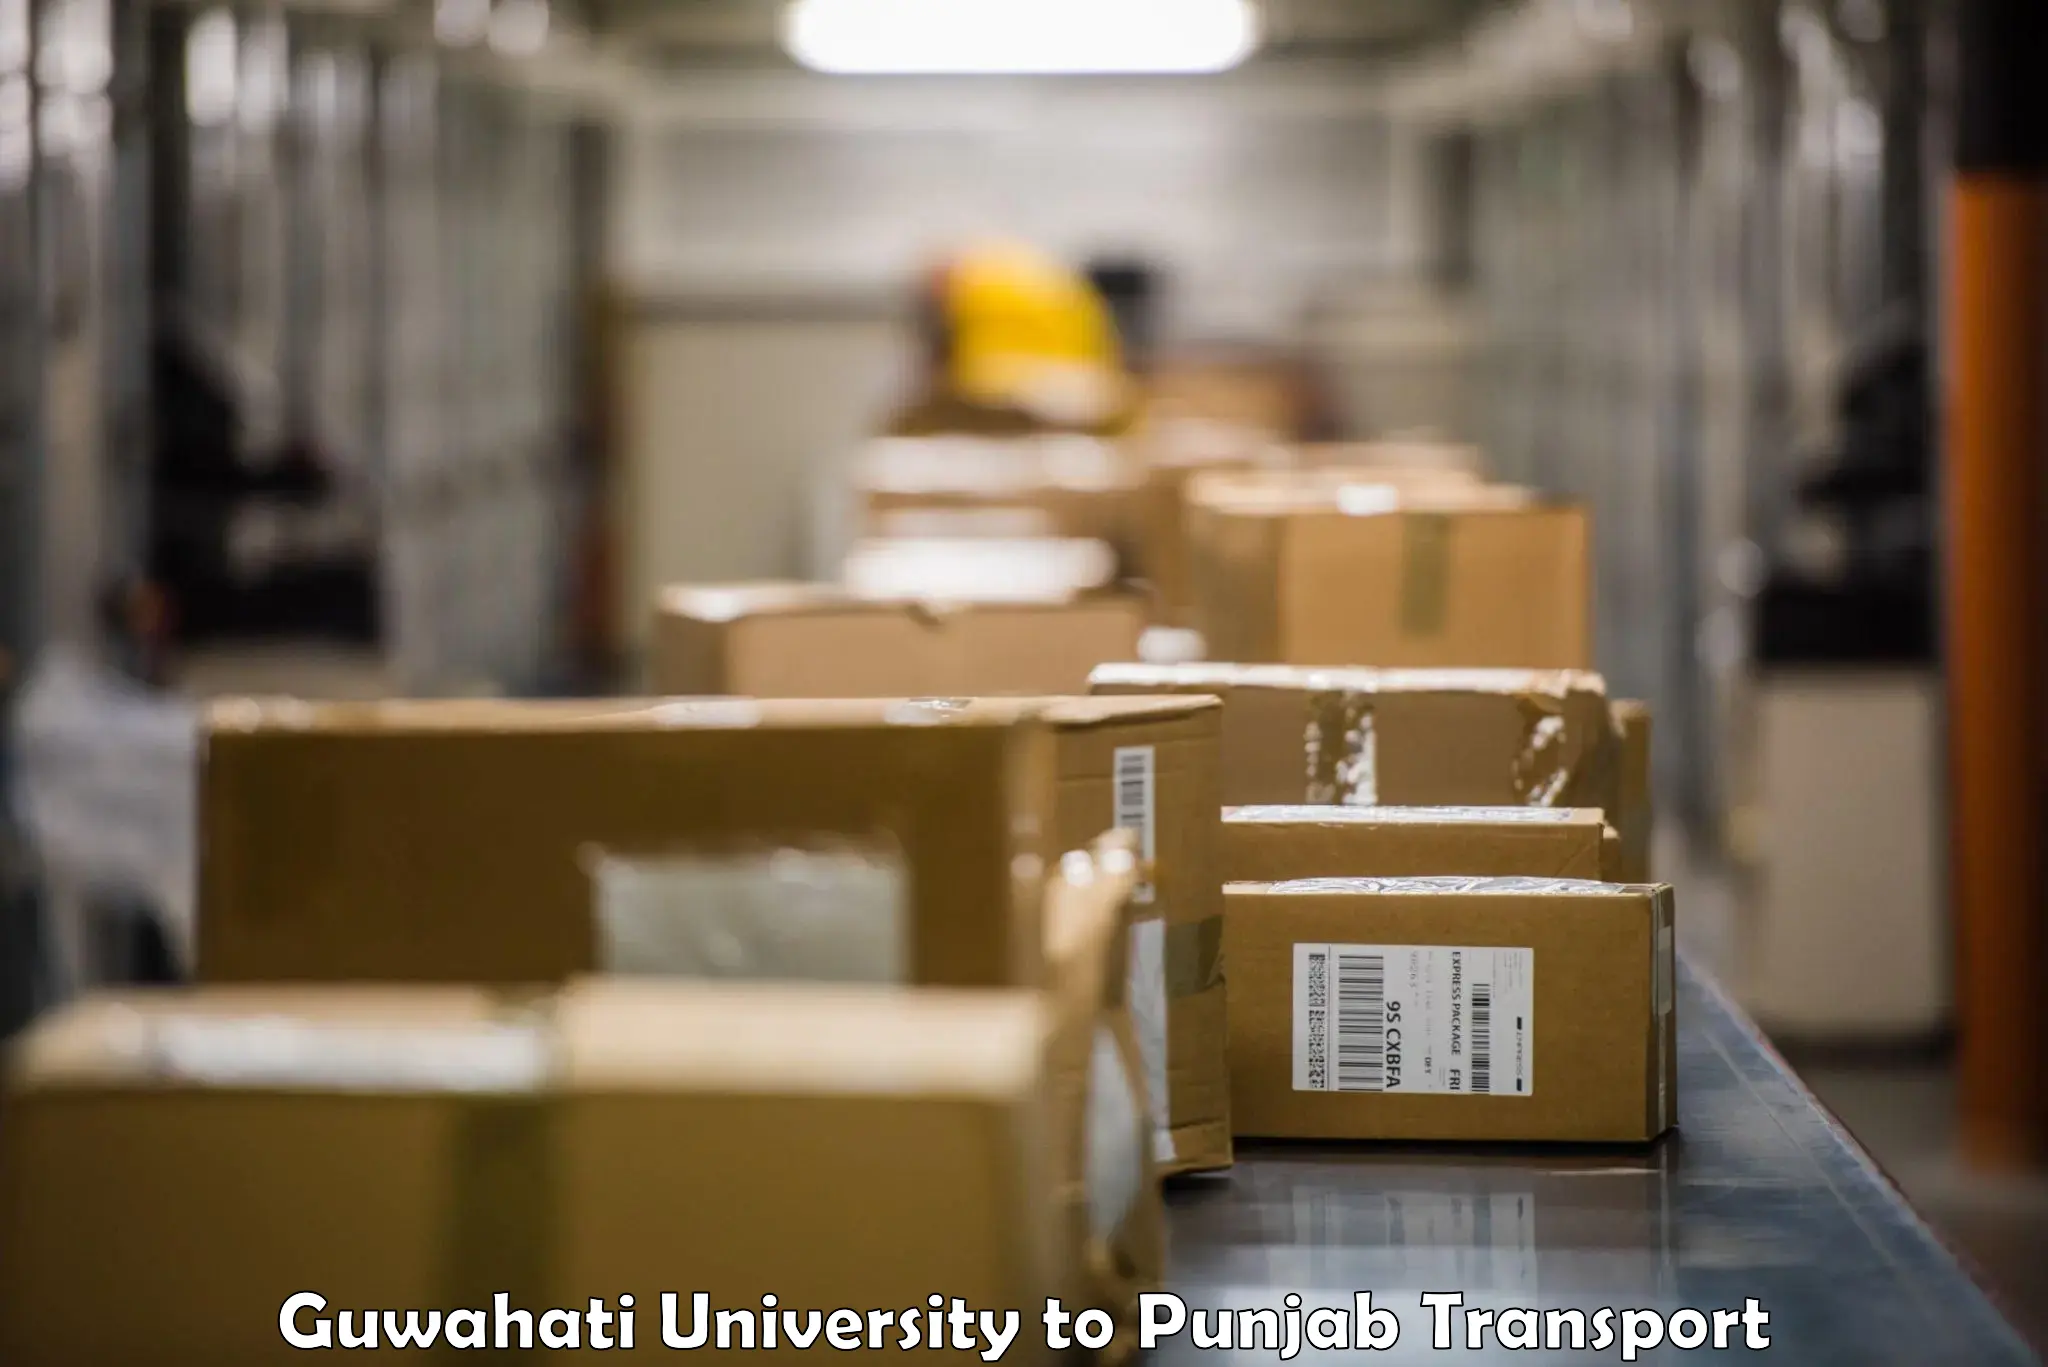 Air freight transport services Guwahati University to Gurdaspur